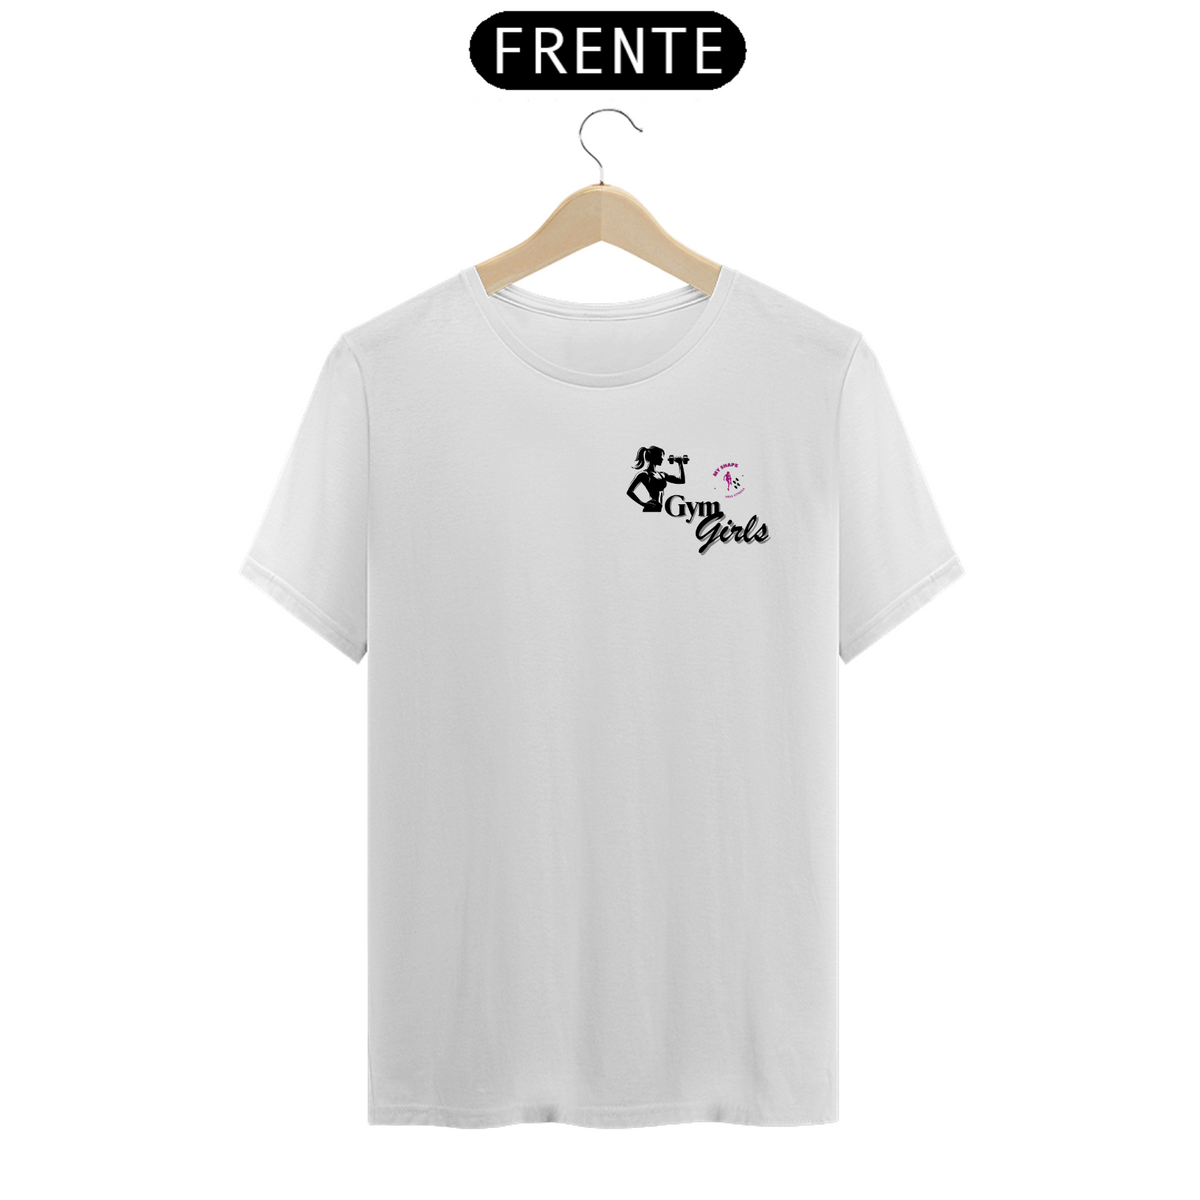 Nome do produto: T-shirt Algodão feminina Gym Girls branca, rosa e cinza